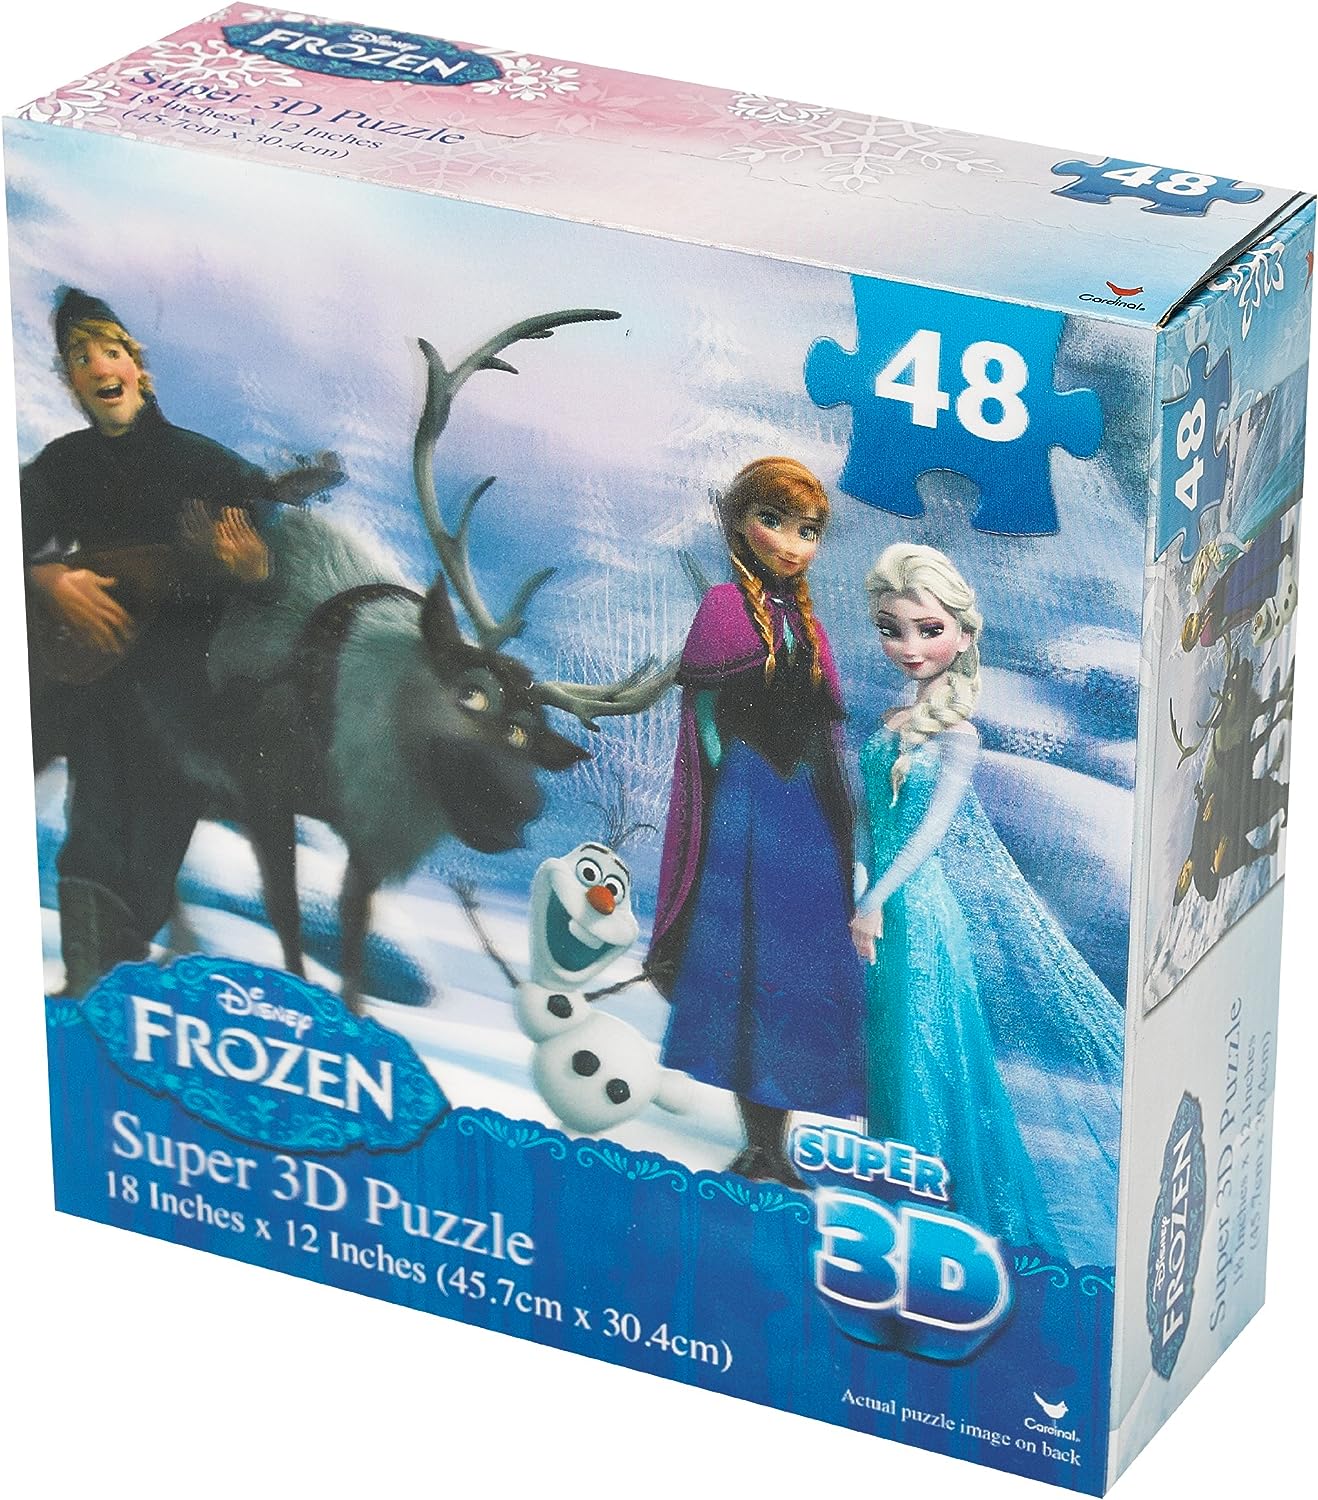 Frozen Super 3D Puzzle 48 pieces Disney Anna Elsa Kristoff Olaf jigsaw puzzle toy - Homeware Discounts